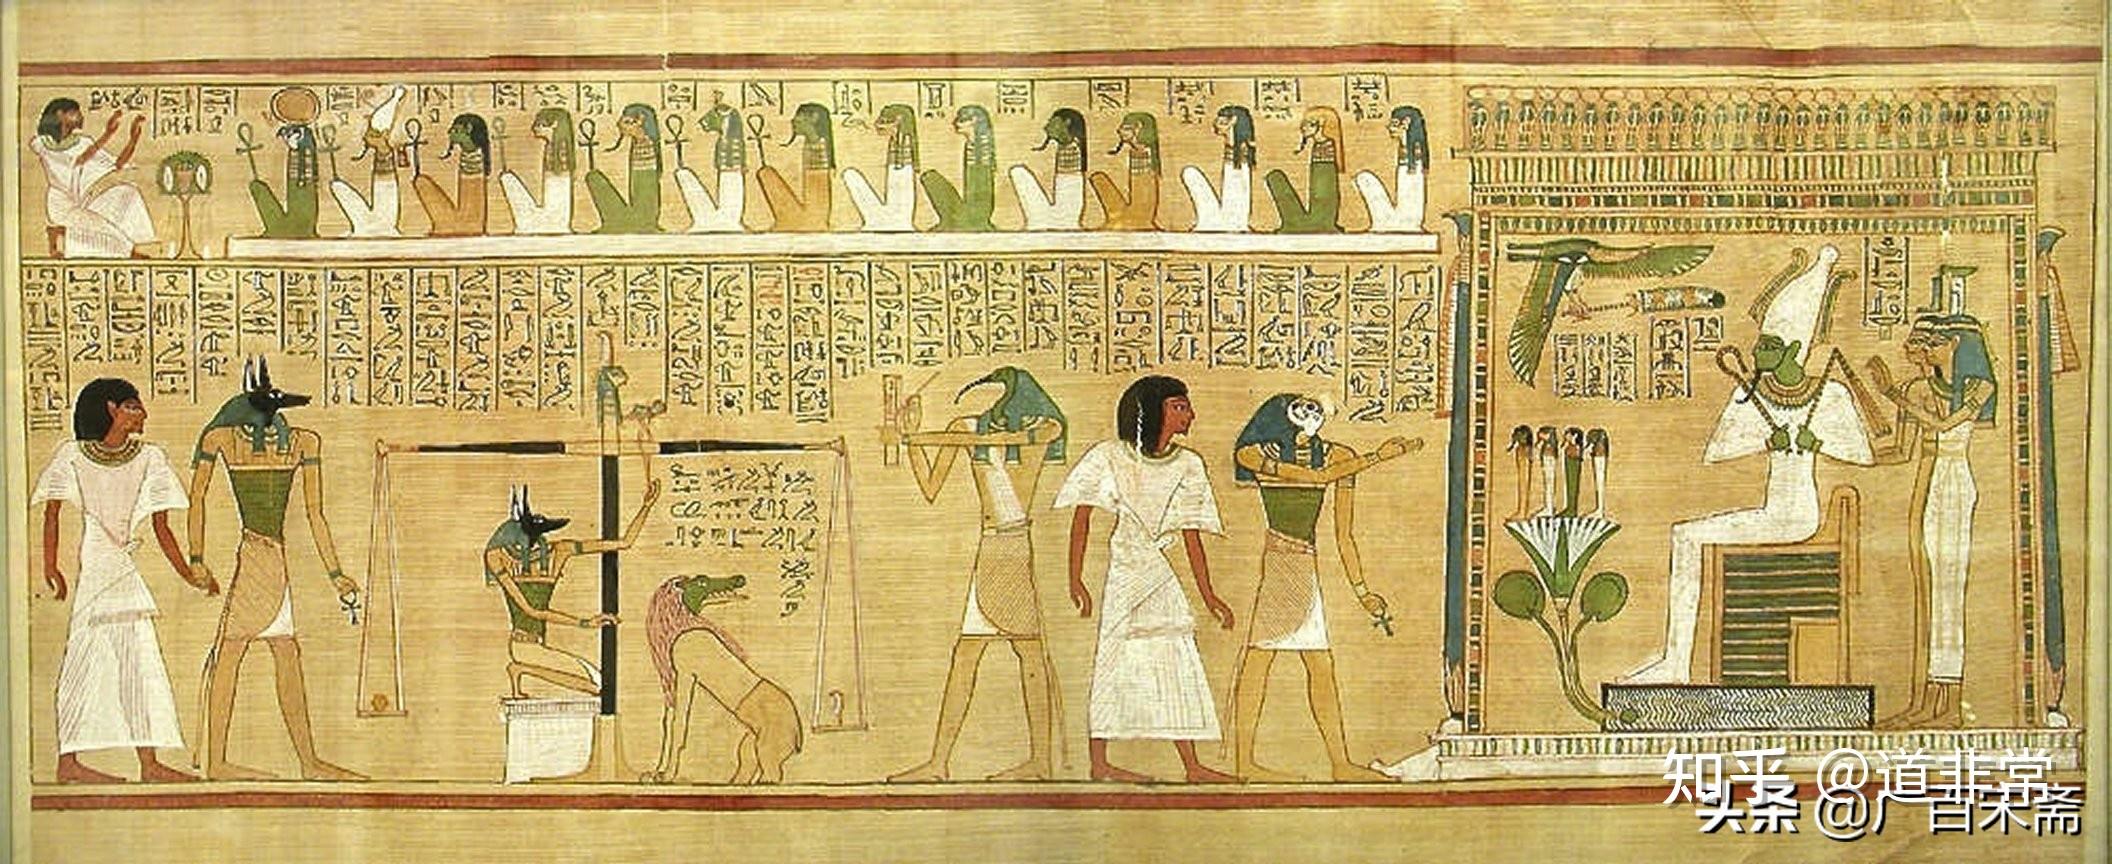 古埃及法老semsu即参宿实沈再证古埃及文明即上古华夏文明